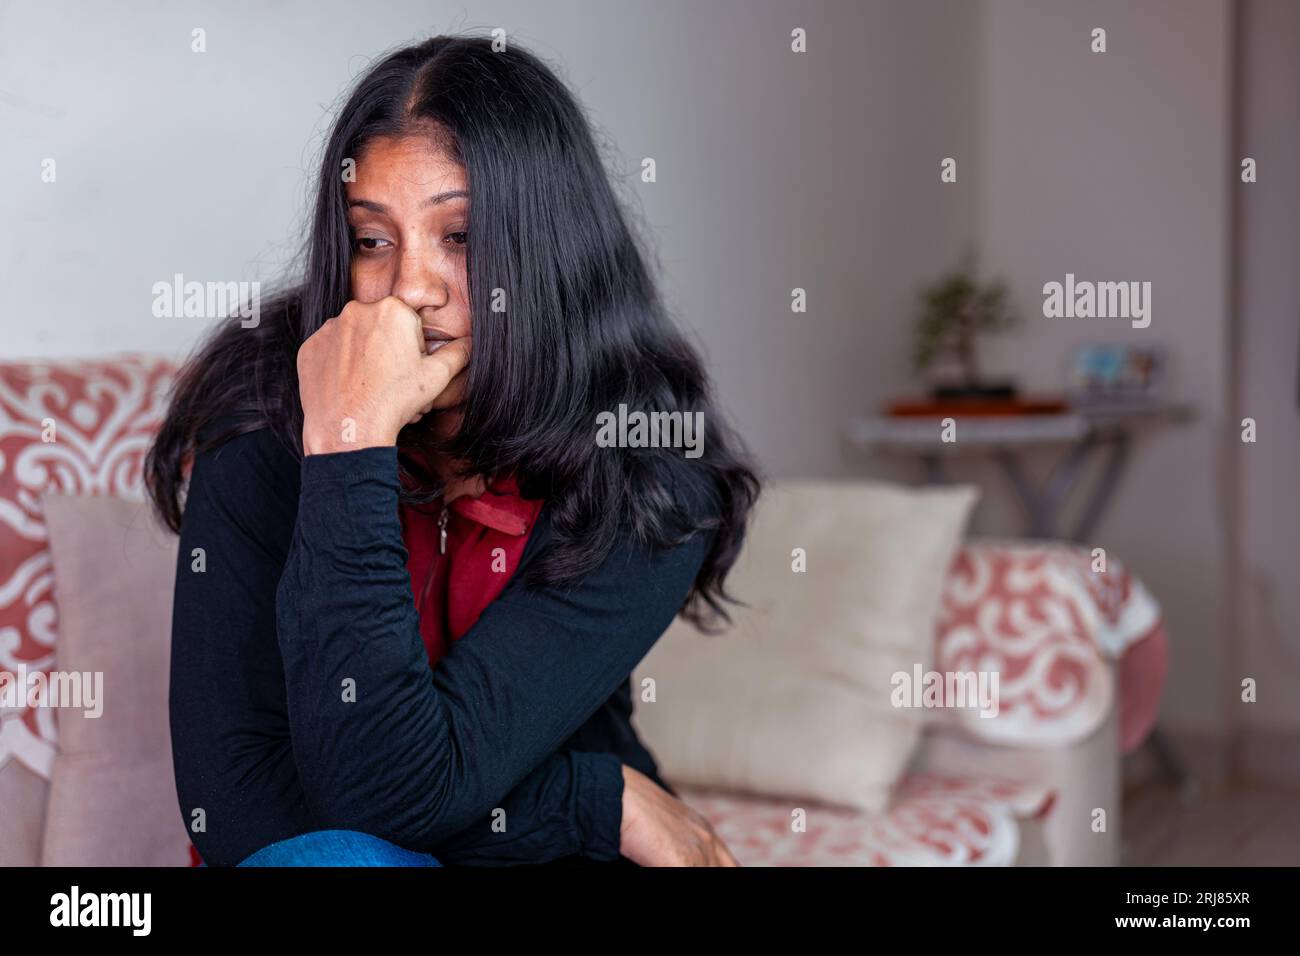 Una giovane donna con i capelli lunghi è seduta su un divano, sembra triste e disorientata Foto Stock